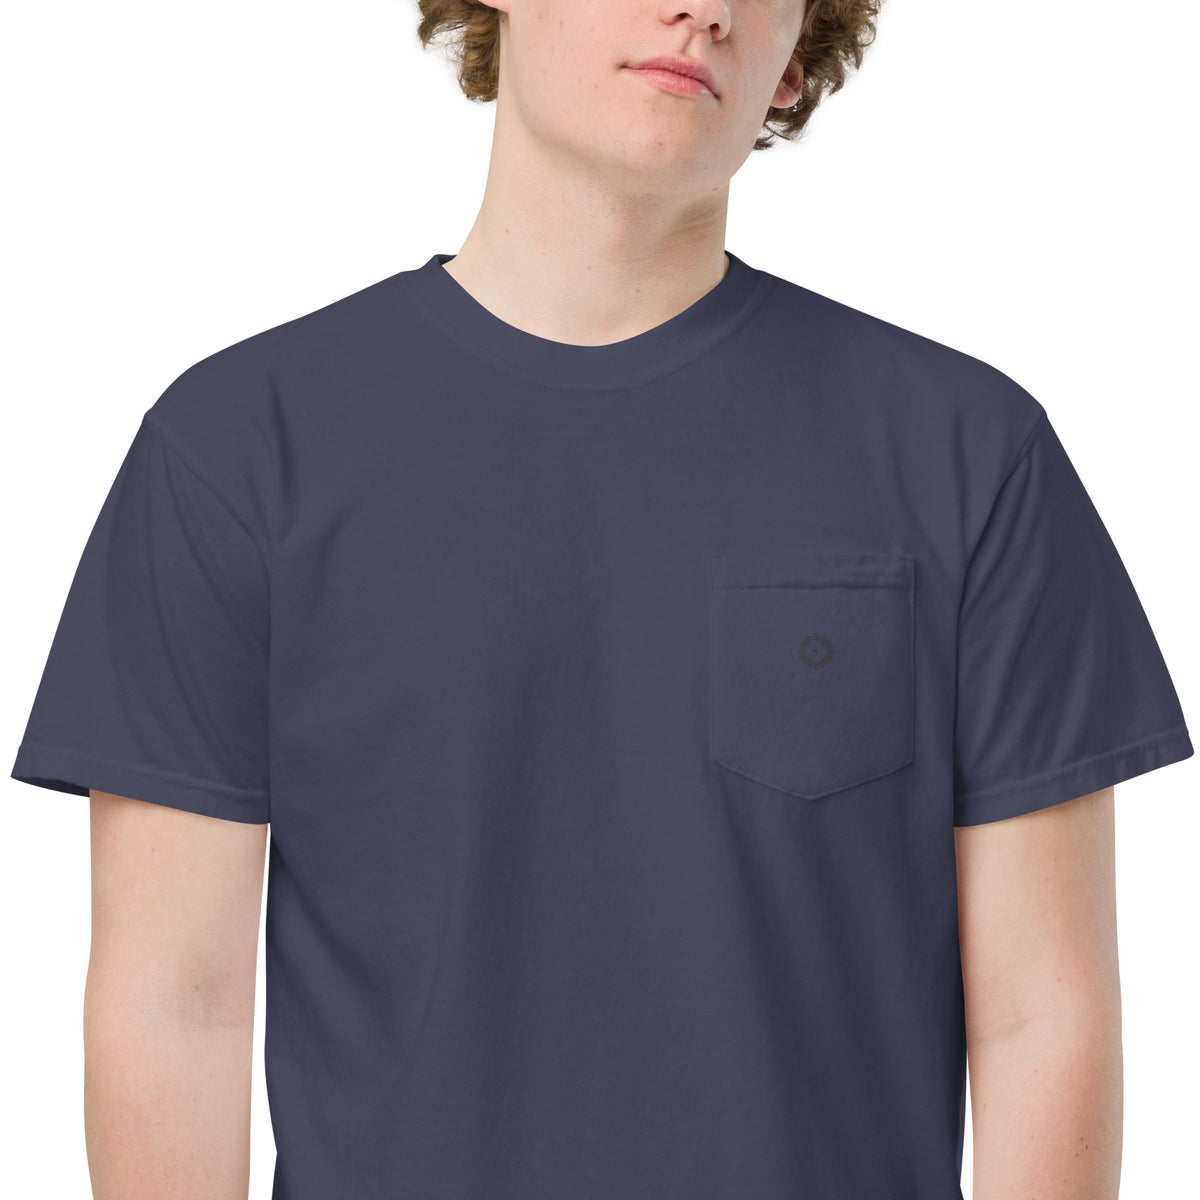 Comfort Colors 6.1 oz. Garment-Dyed Pocket T-Shirt-S (Violet)